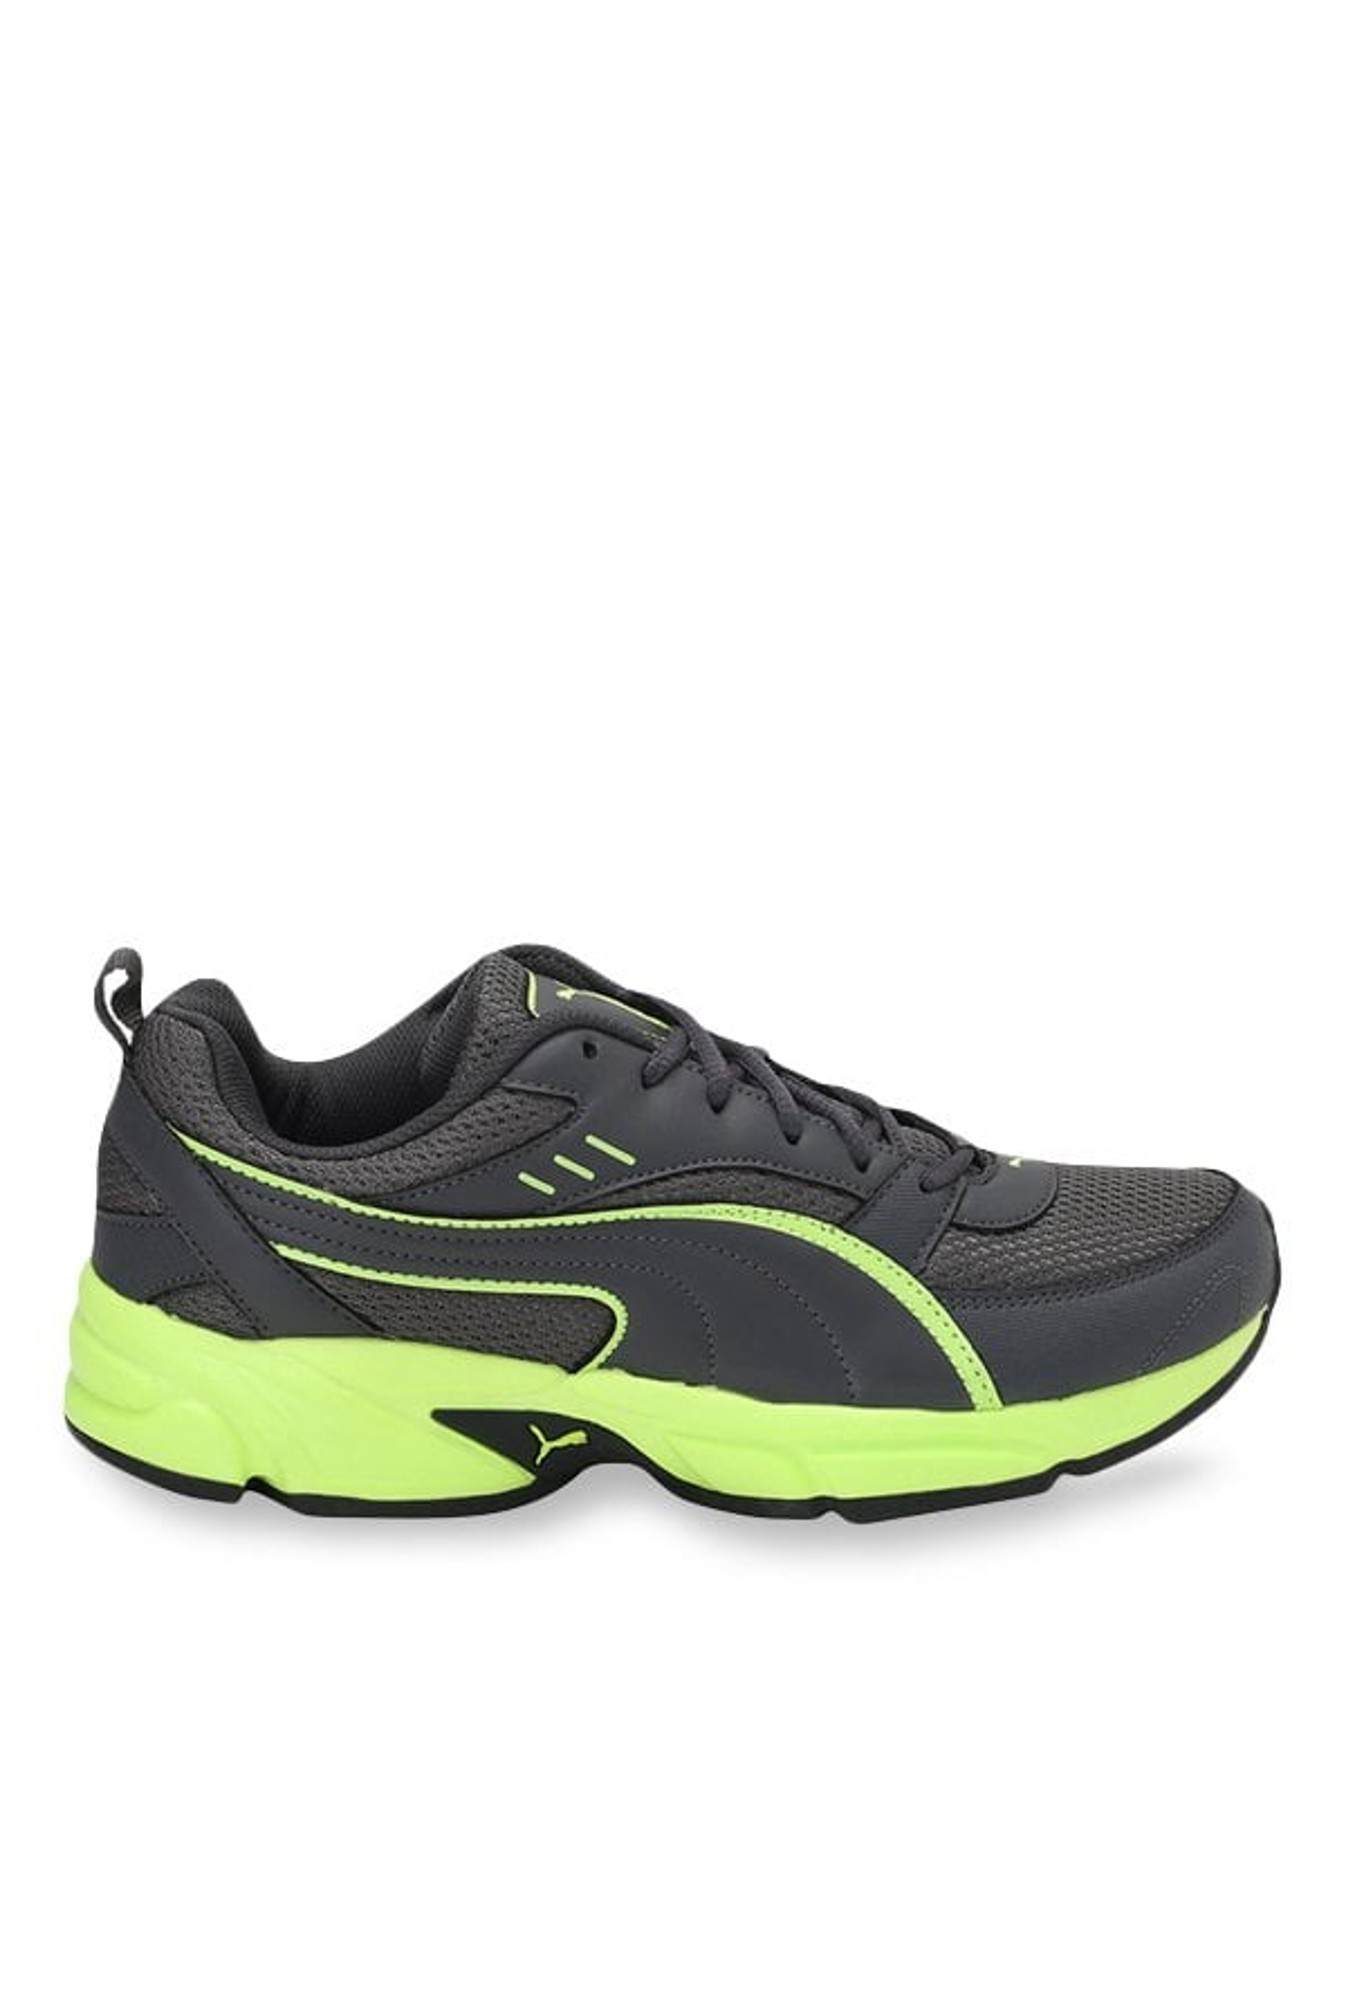 puma atom fashion iii dp running shoes review